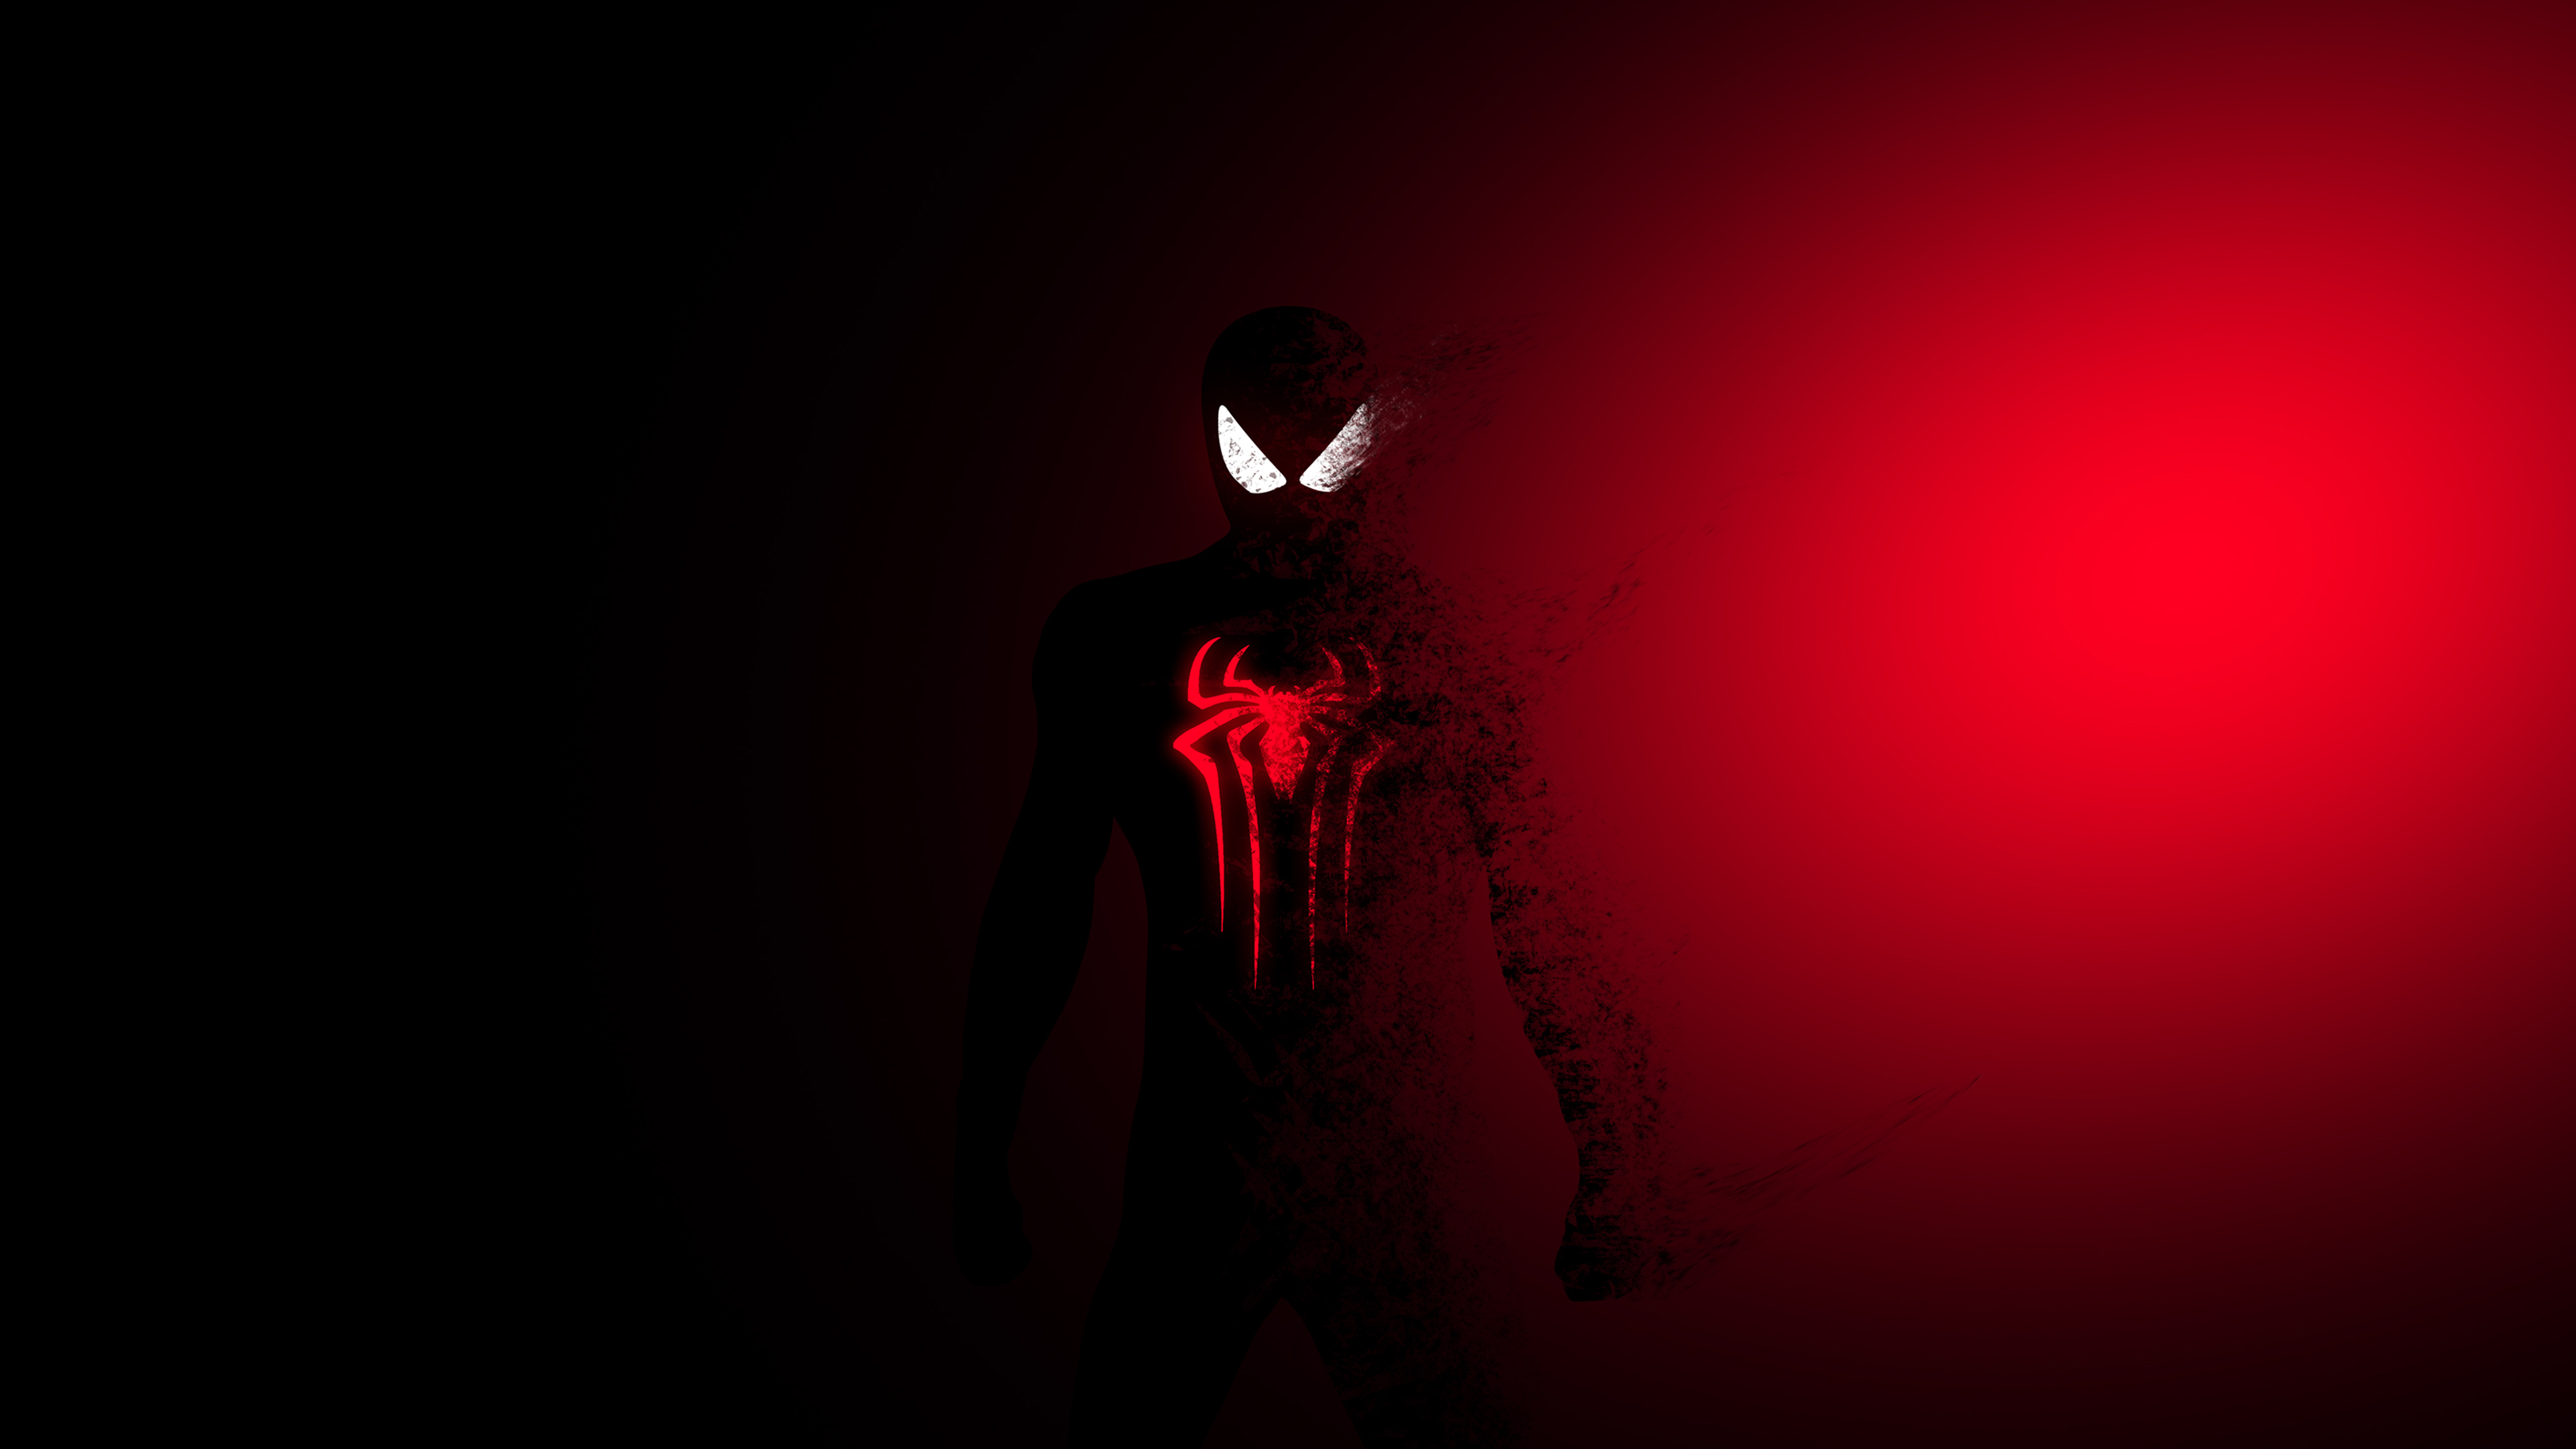 Nếu bạn là fan của Siêu Nhân Người Nhện, hình nền Spider-Man đỏ chắc chắn sẽ khiến bạn thích thú. Với hình ảnh siêu anh hùng đầy ngầu và màu sắc đỏ tươi sáng, hình nền này sẽ khiến bạn trở thành một phần của thế giới siêu năng lực của Siêu Nhân Người Nhện.